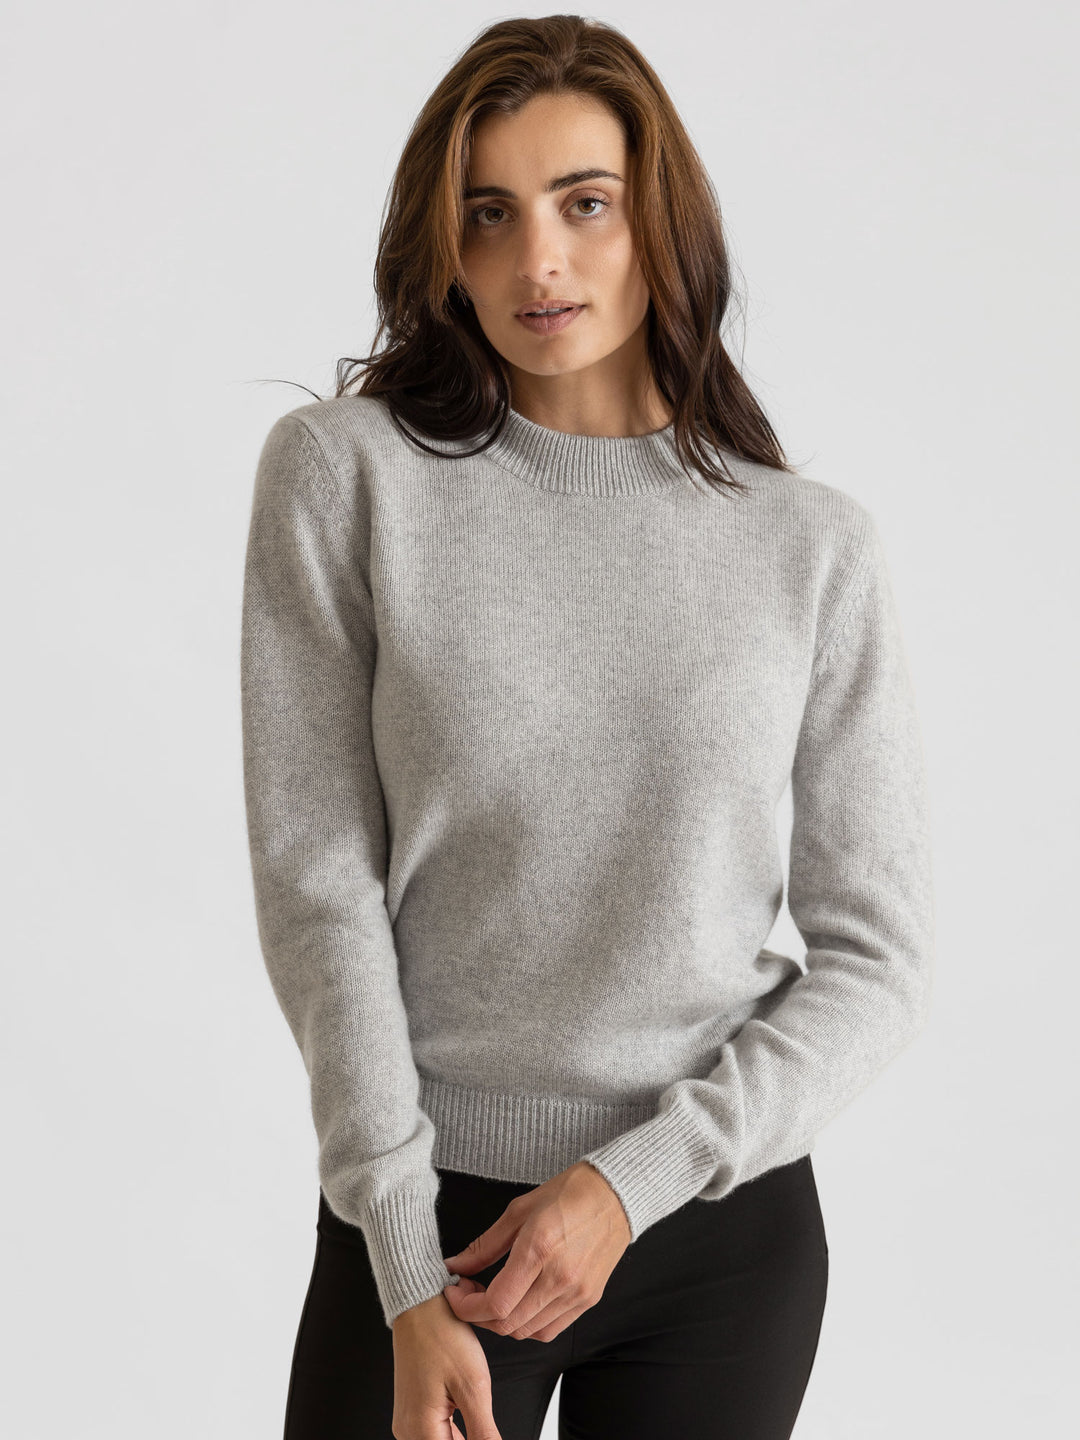 Cashmere sweater Sofia Long light grey 100% pure cashmere